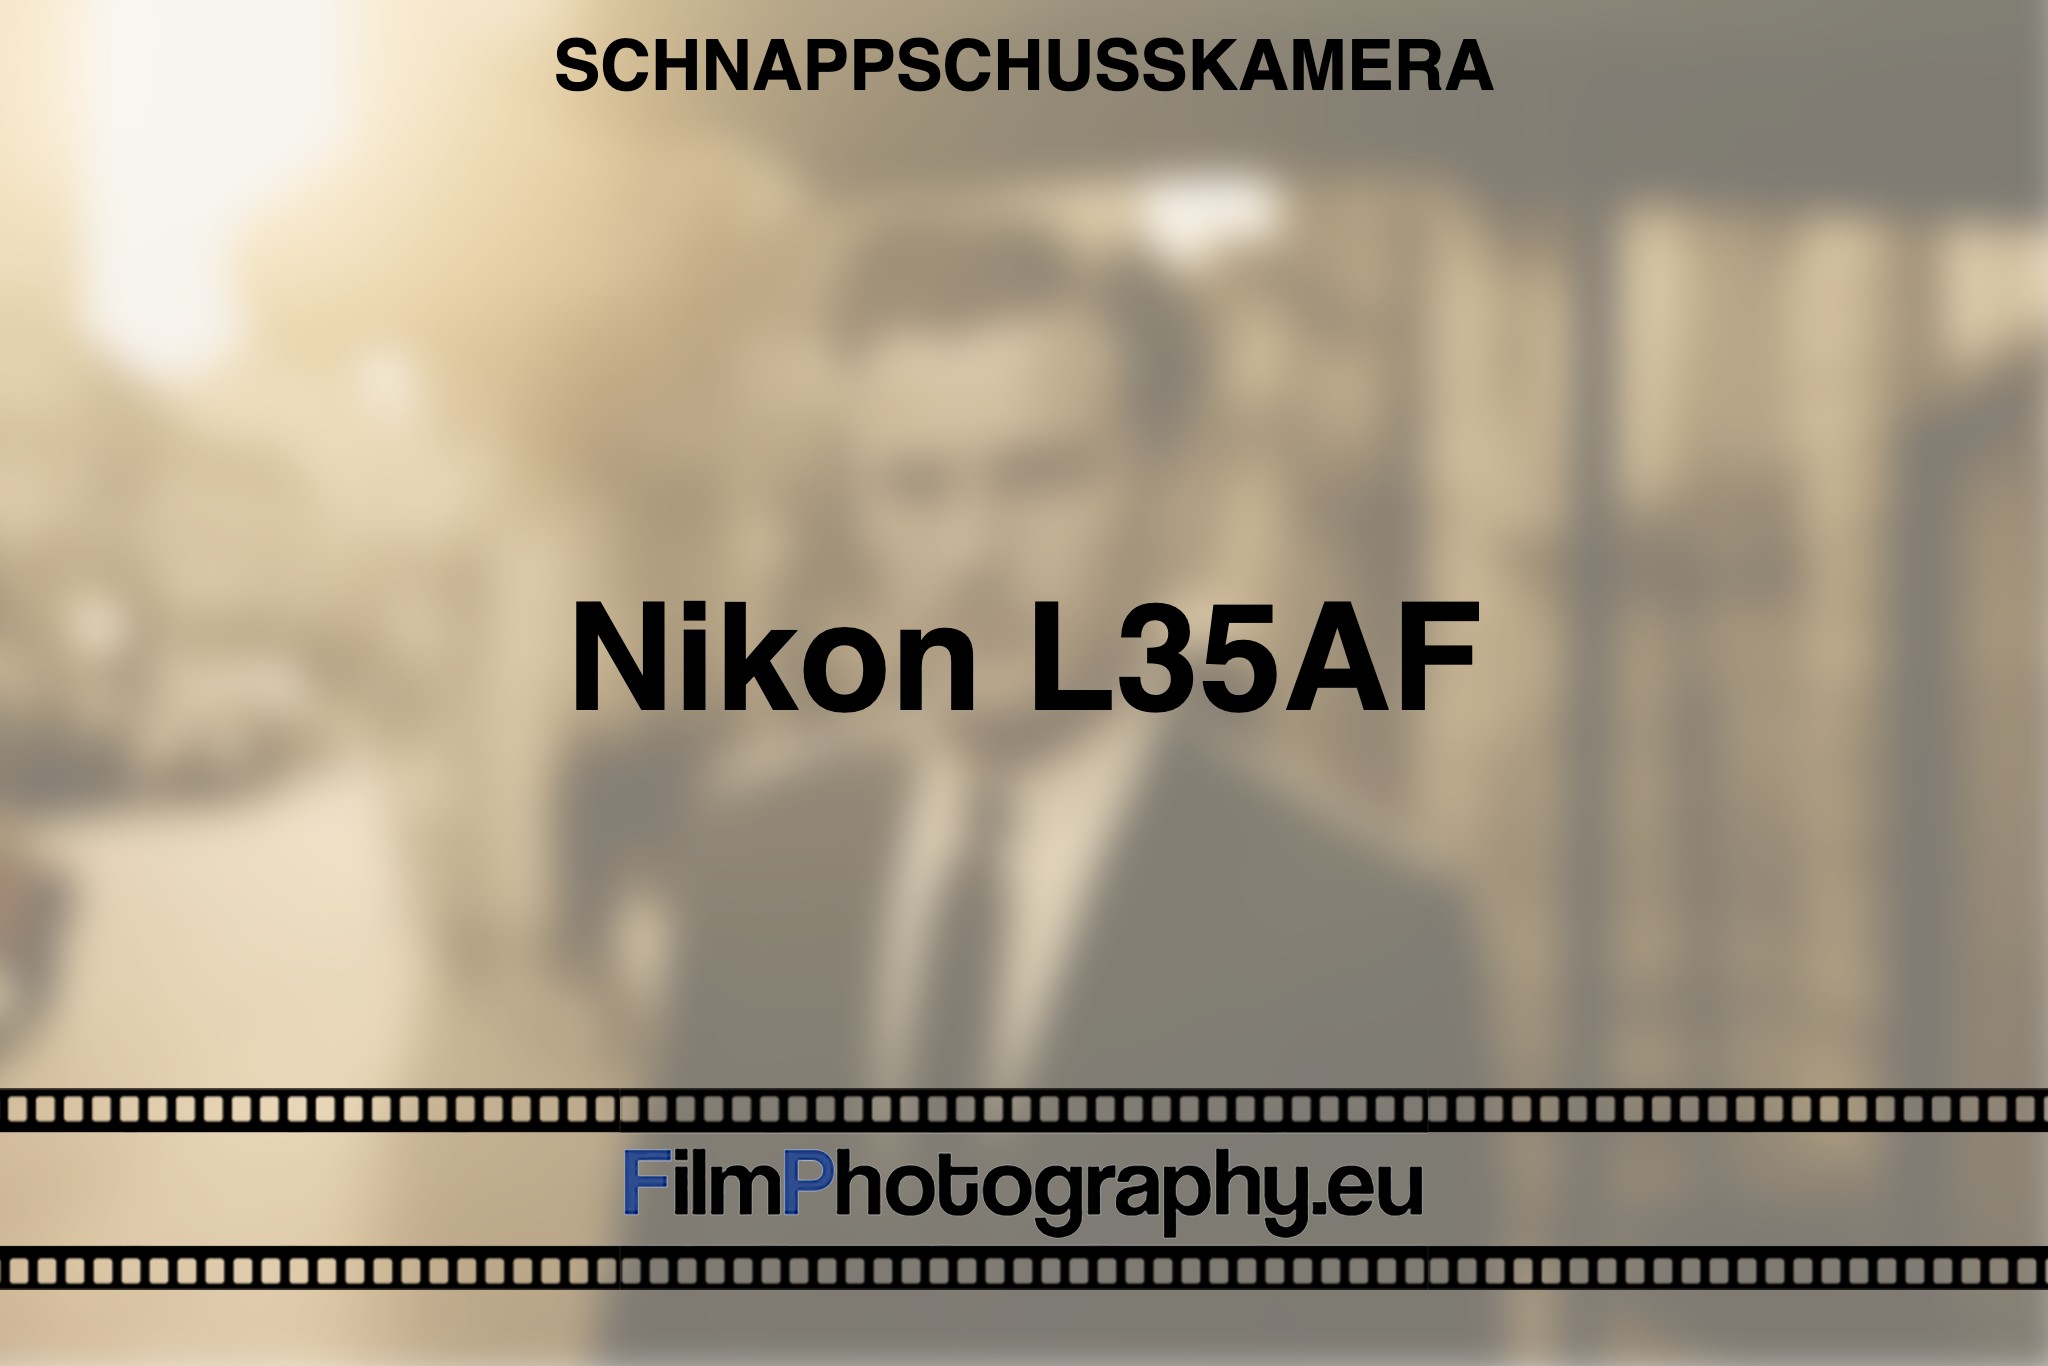 nikon-l35af-schnappschusskamera-bnv